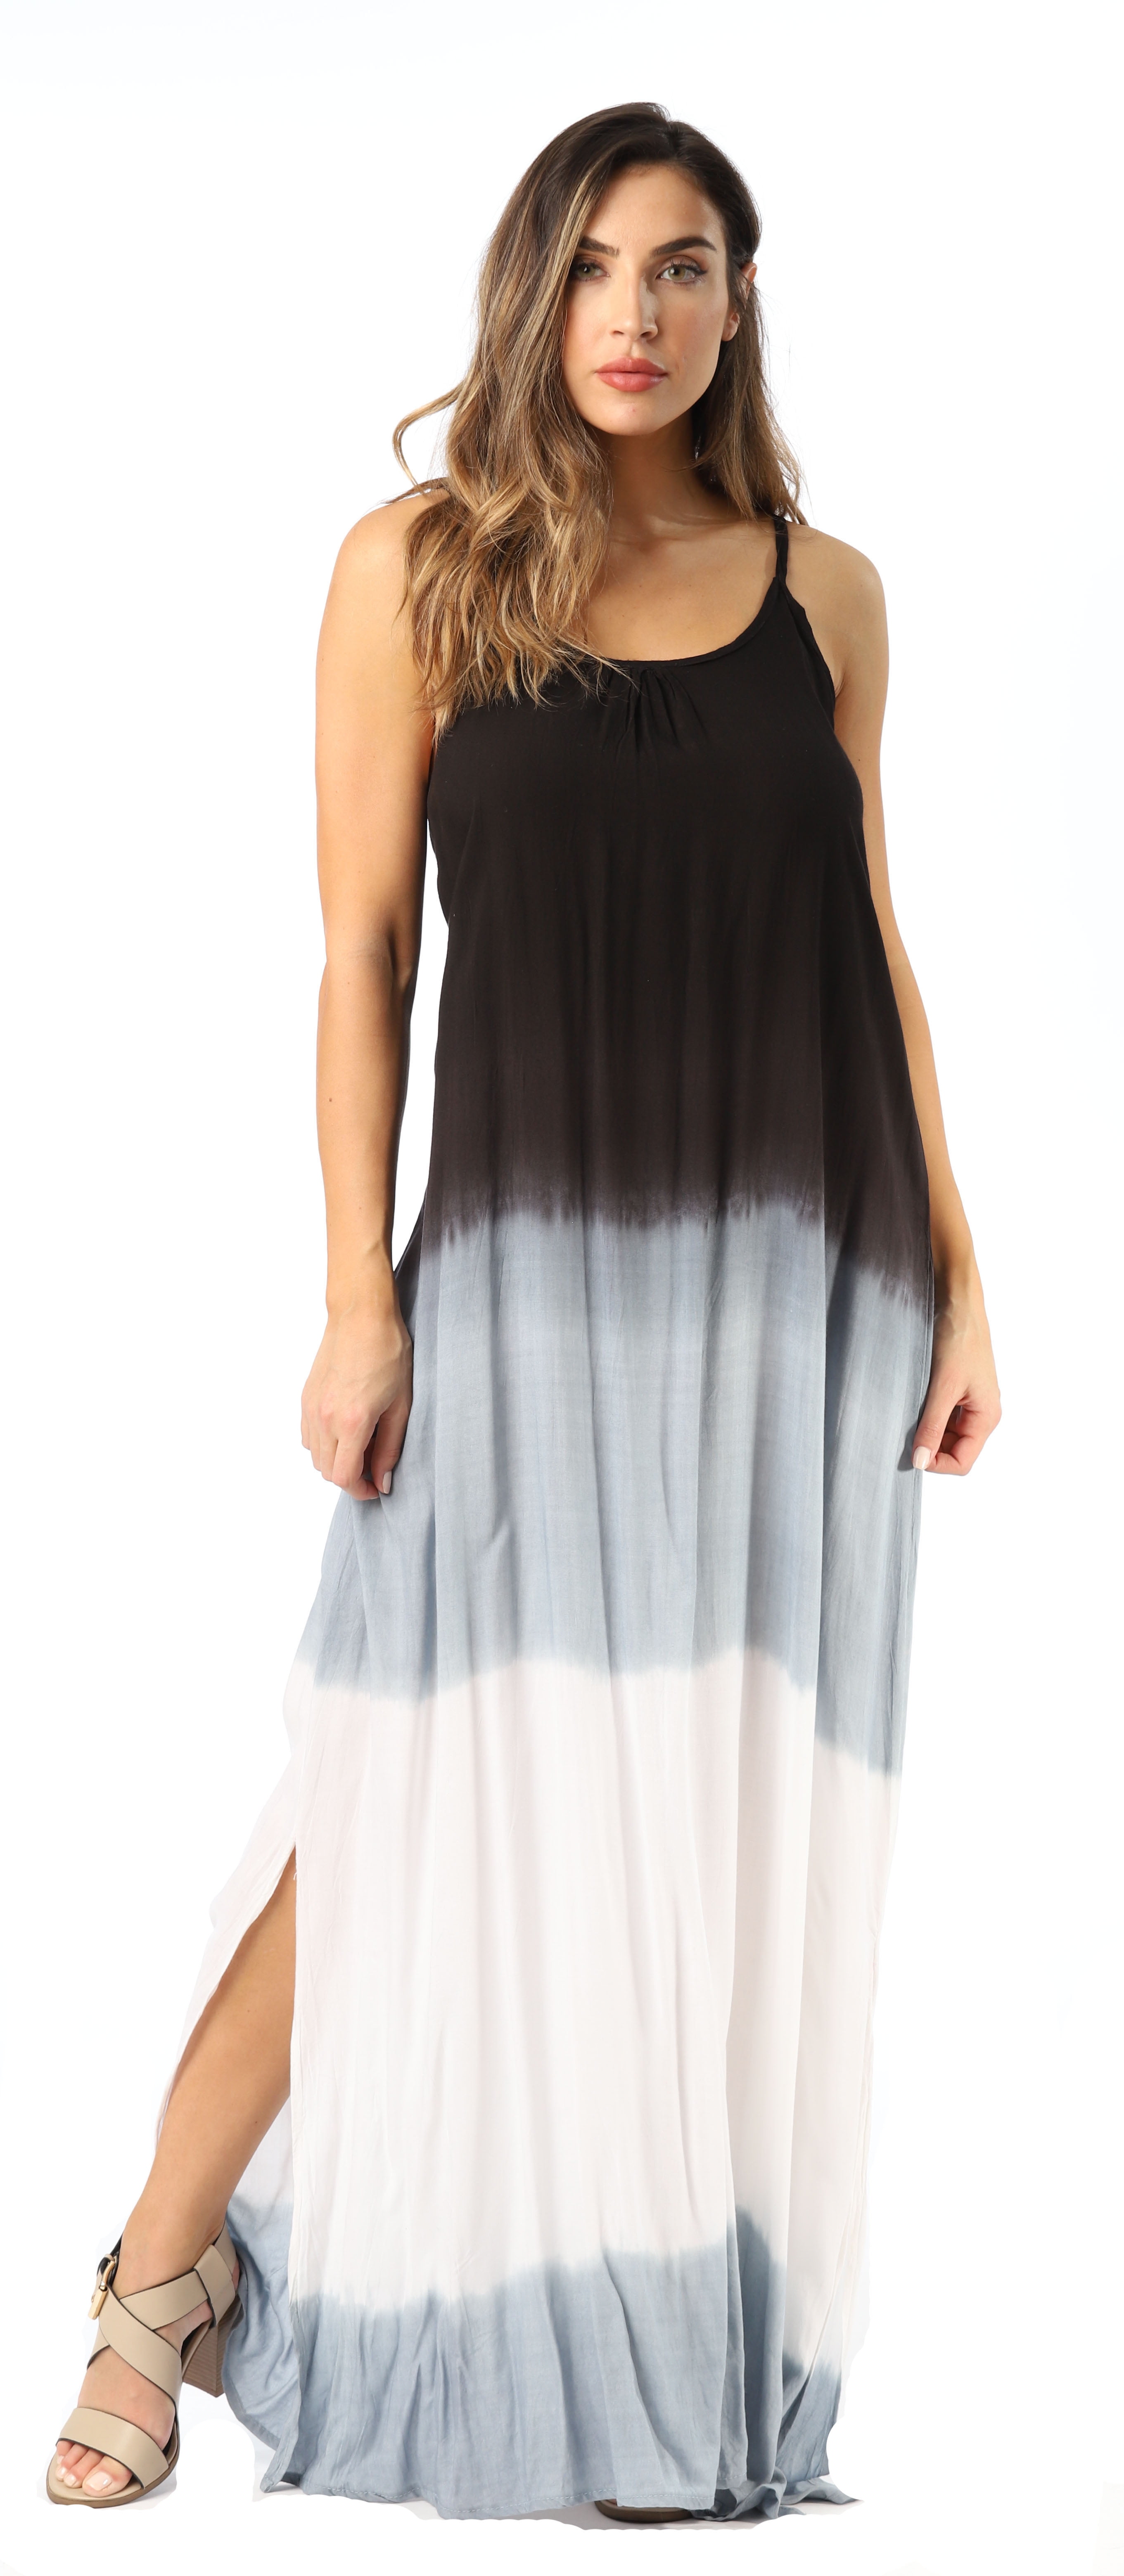 Riviera Sun Tie Dye Spaghetti Strap Maxi Dress (Black / White, Small) -  Walmart.com